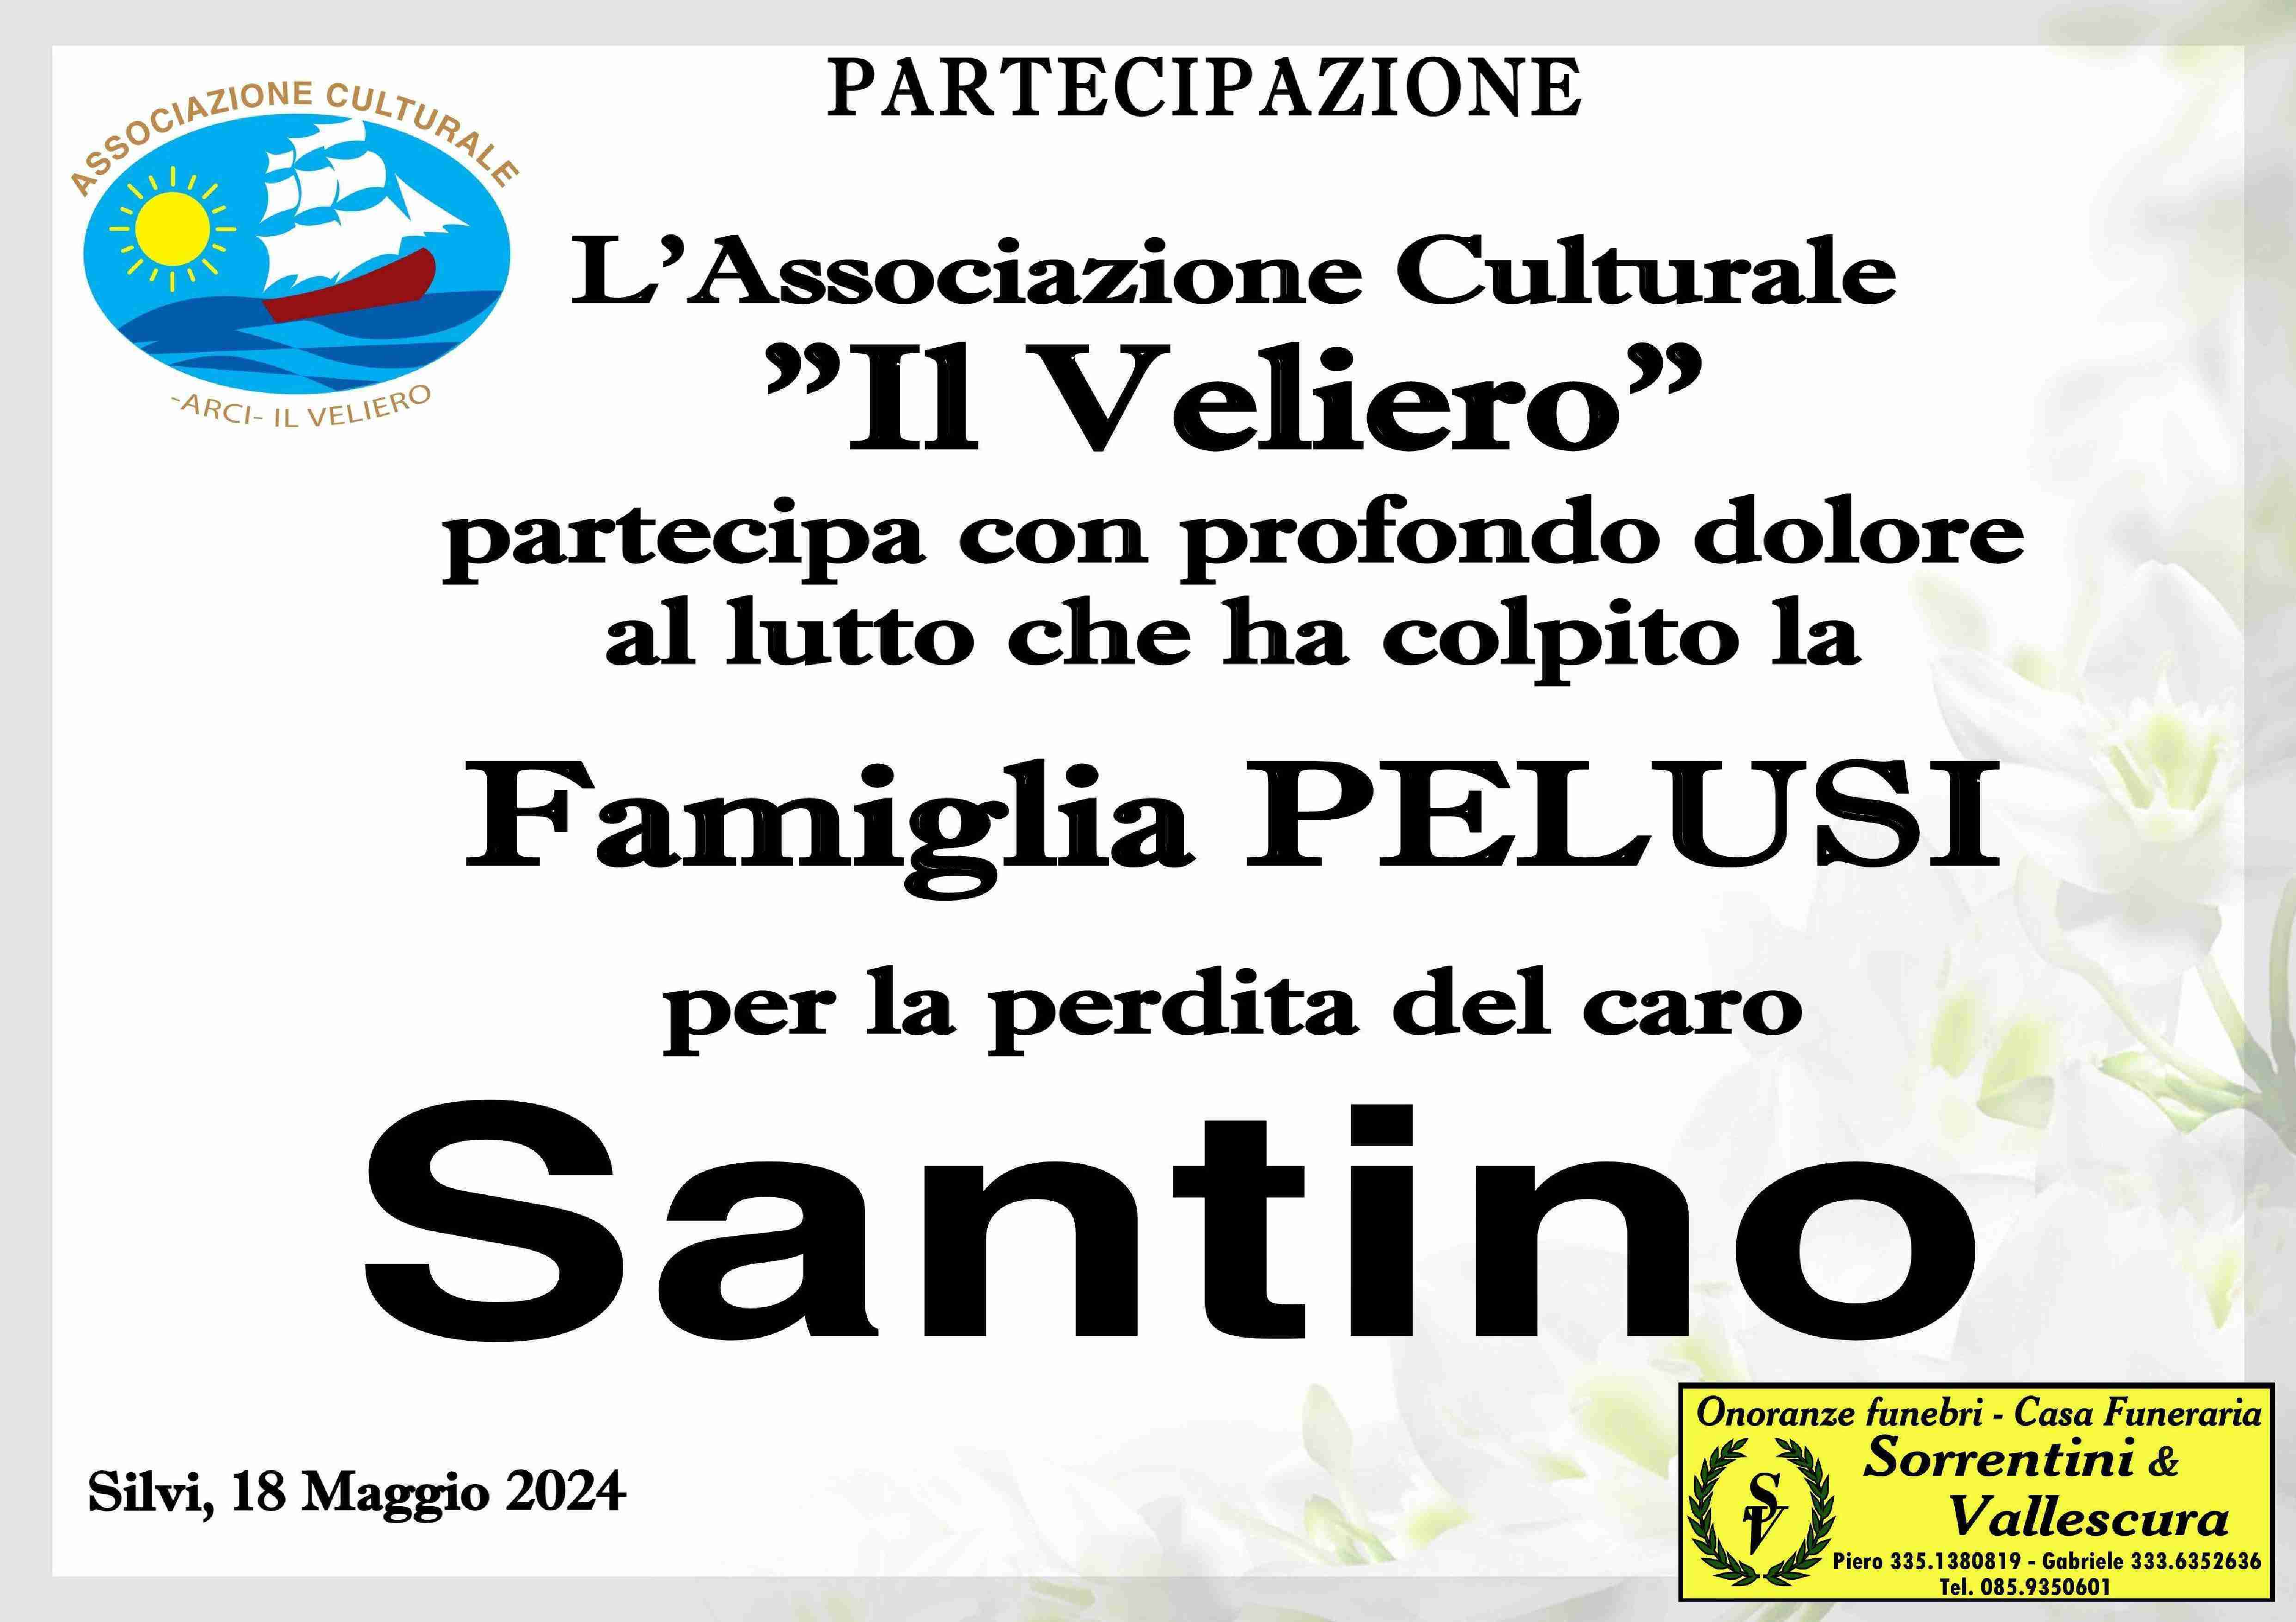 Santino Pelusi